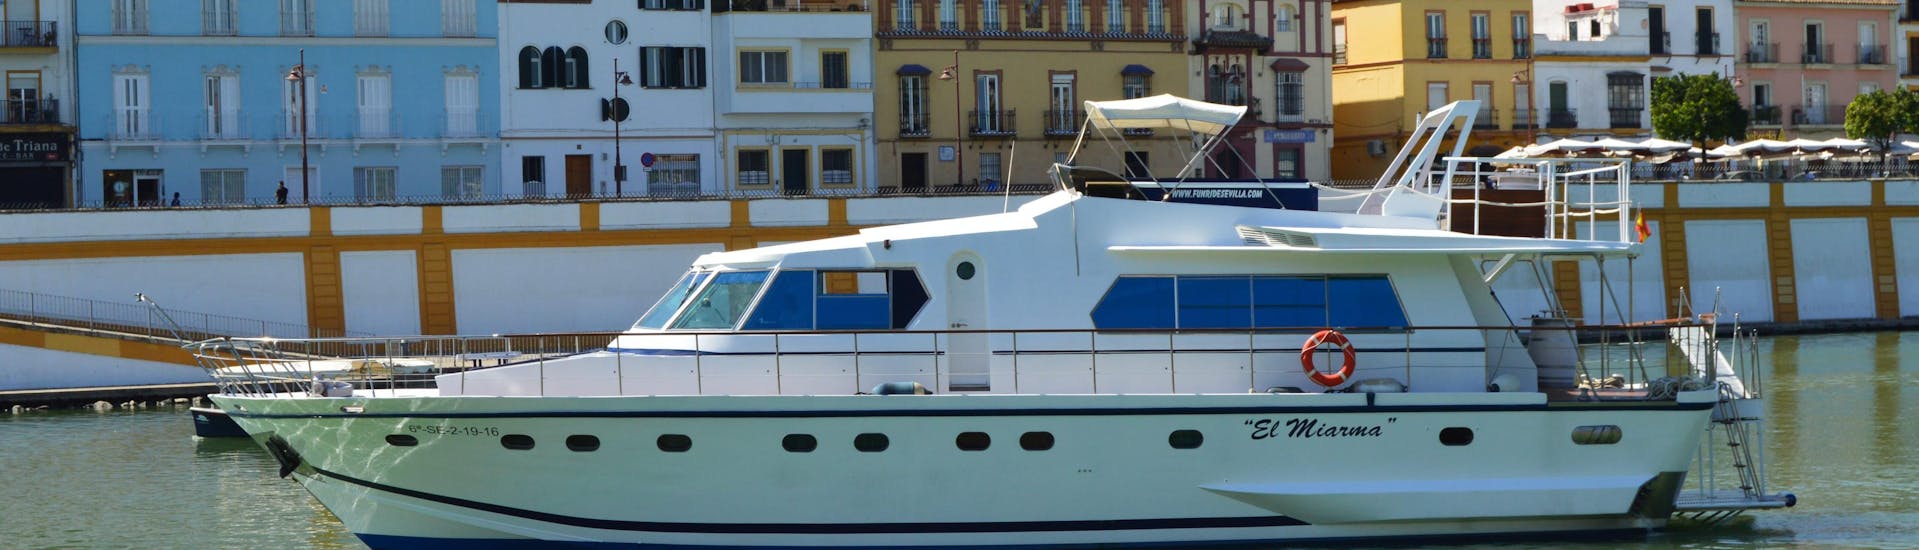 Die Tourteilnehmer freuen sich darauf, Sevilla in allen Facetten kennenzulernen während ihrer Bootstour am Río Guadalquivir mit Sevilla Stadttour von Fun Ride Sevilla.